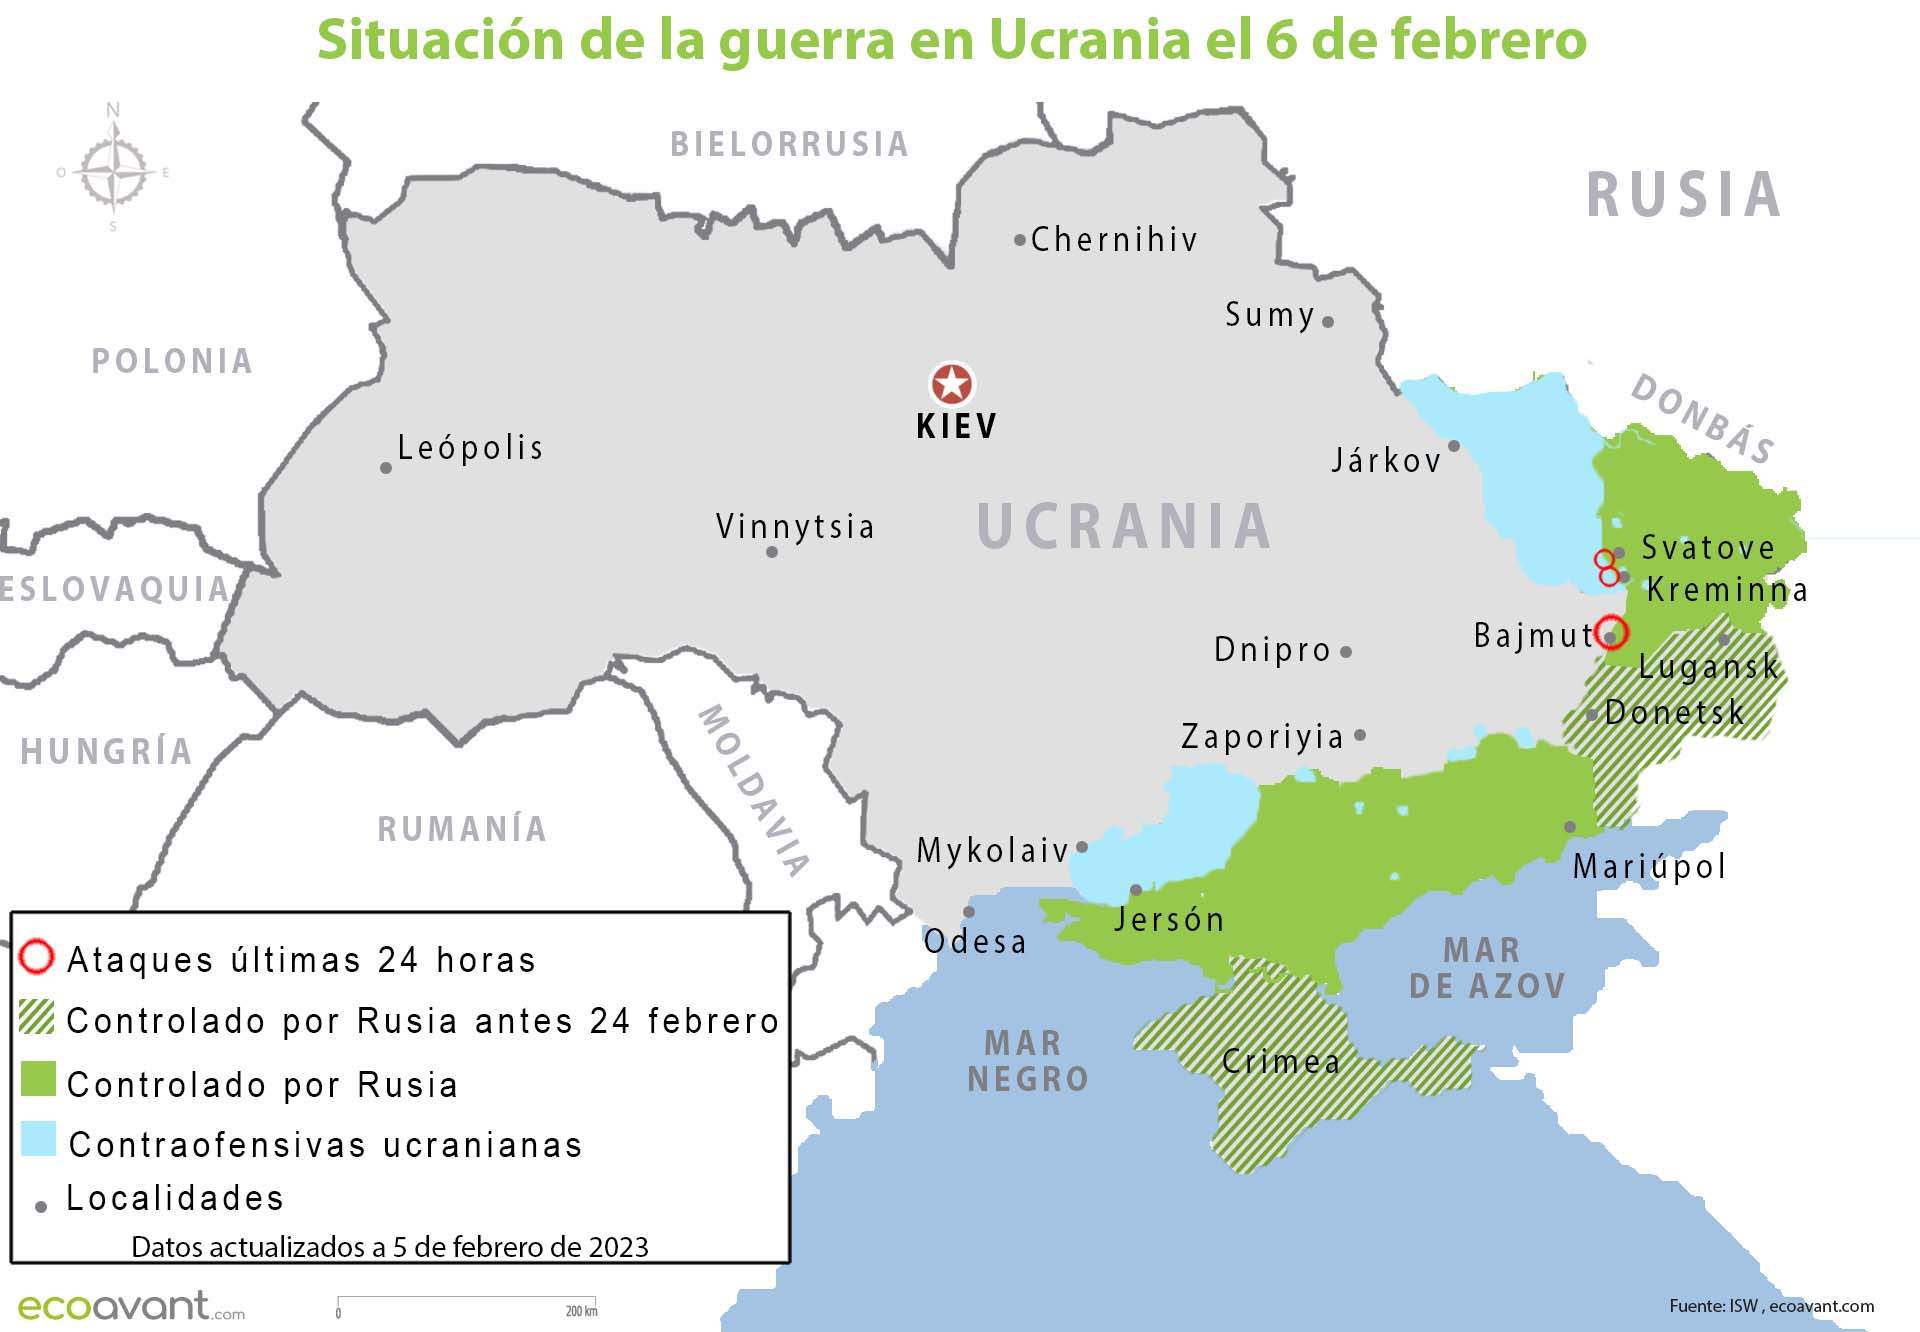 Situación de la guerra en Ucrania el 6 de febrero de 2023